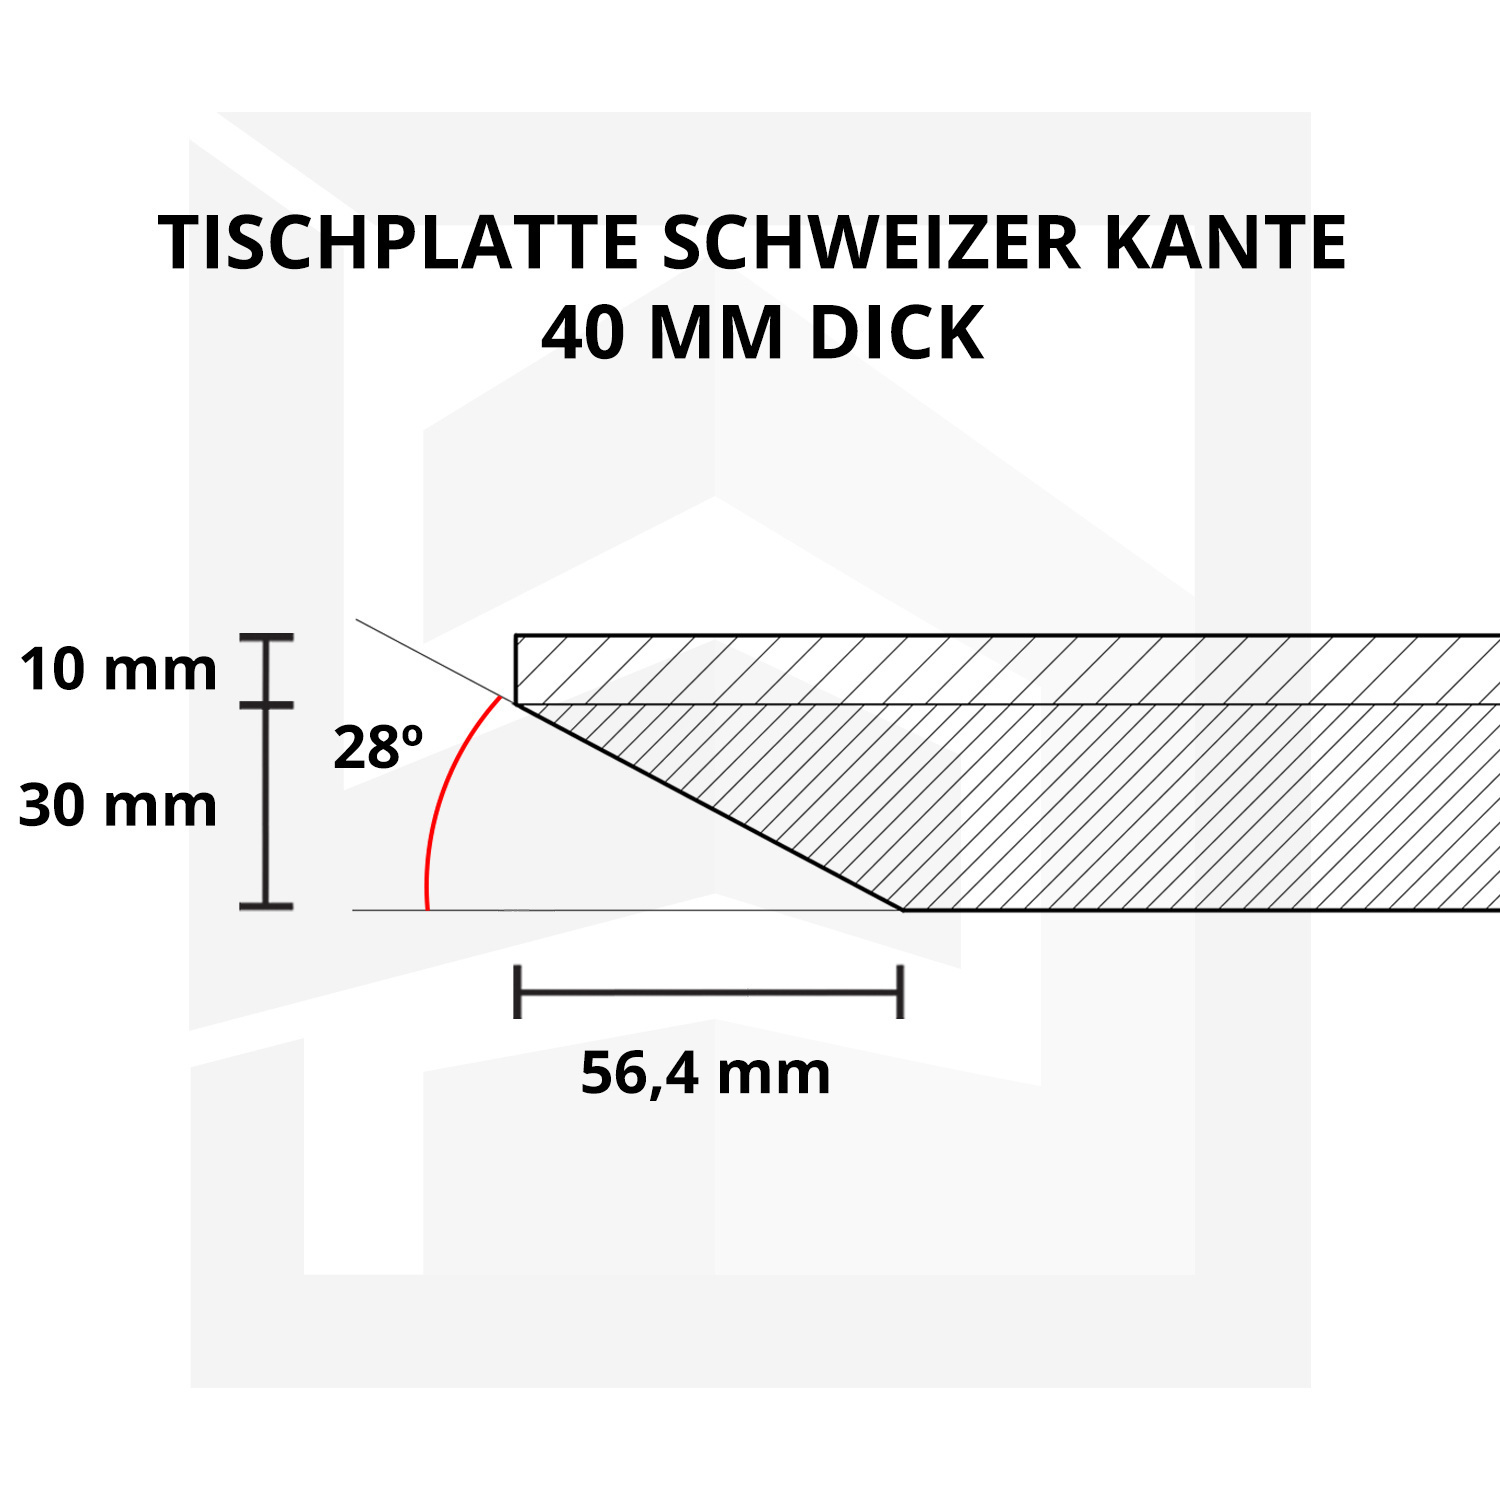  Tischplatte Eiche - Schweizer Kante - 4 cm dick (1-Schicht) - Breite Lamellen (10 - 12 cm breit) - Eichenholz A-Qualität - verleimt & künstlich getrocknet (HF 8-12%) - verschiedene Größen